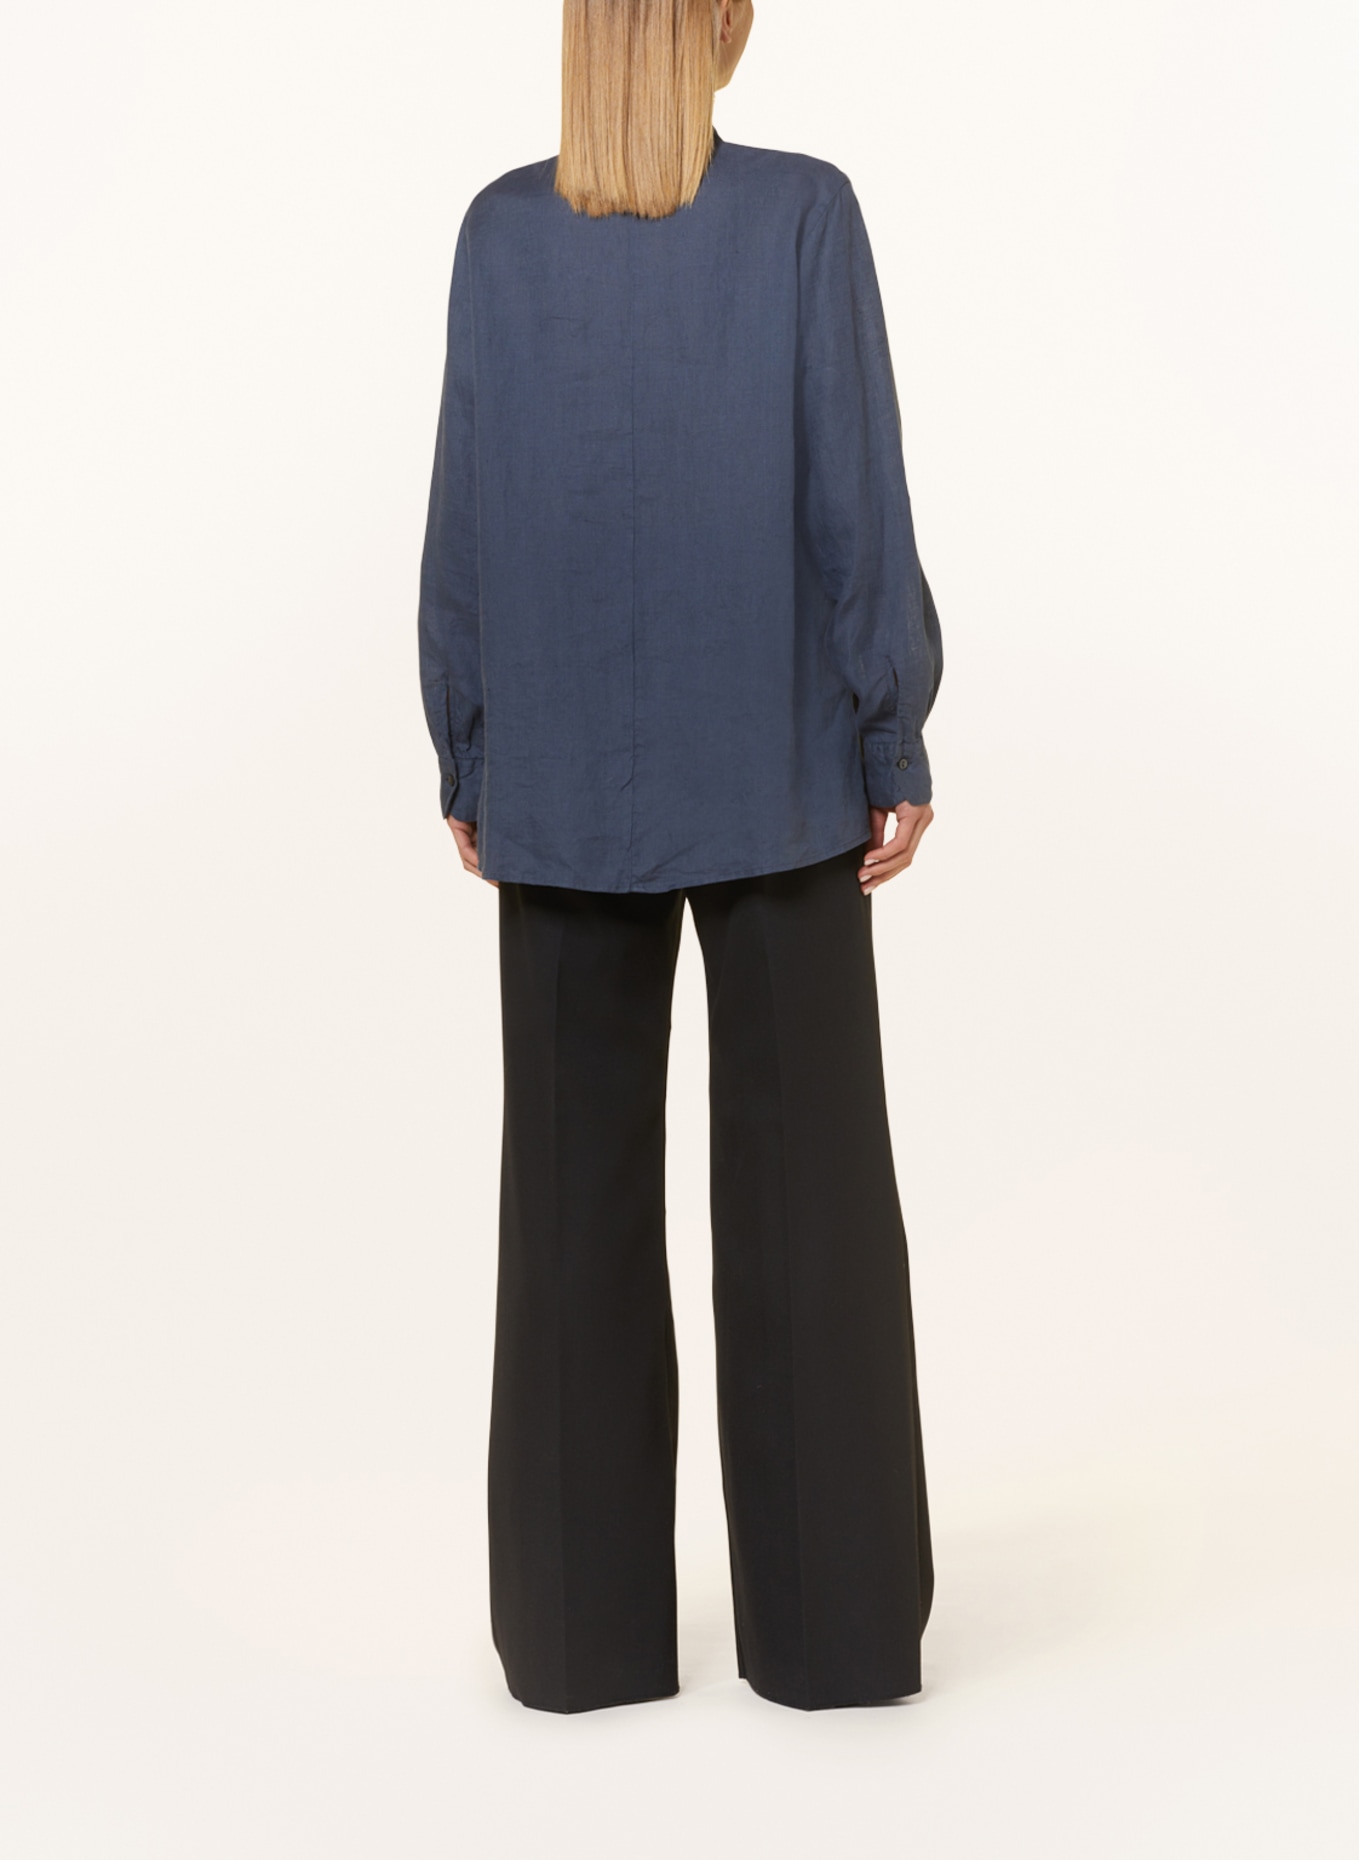 rossana diva Linen blouse, Color: DARK GRAY (Image 3)